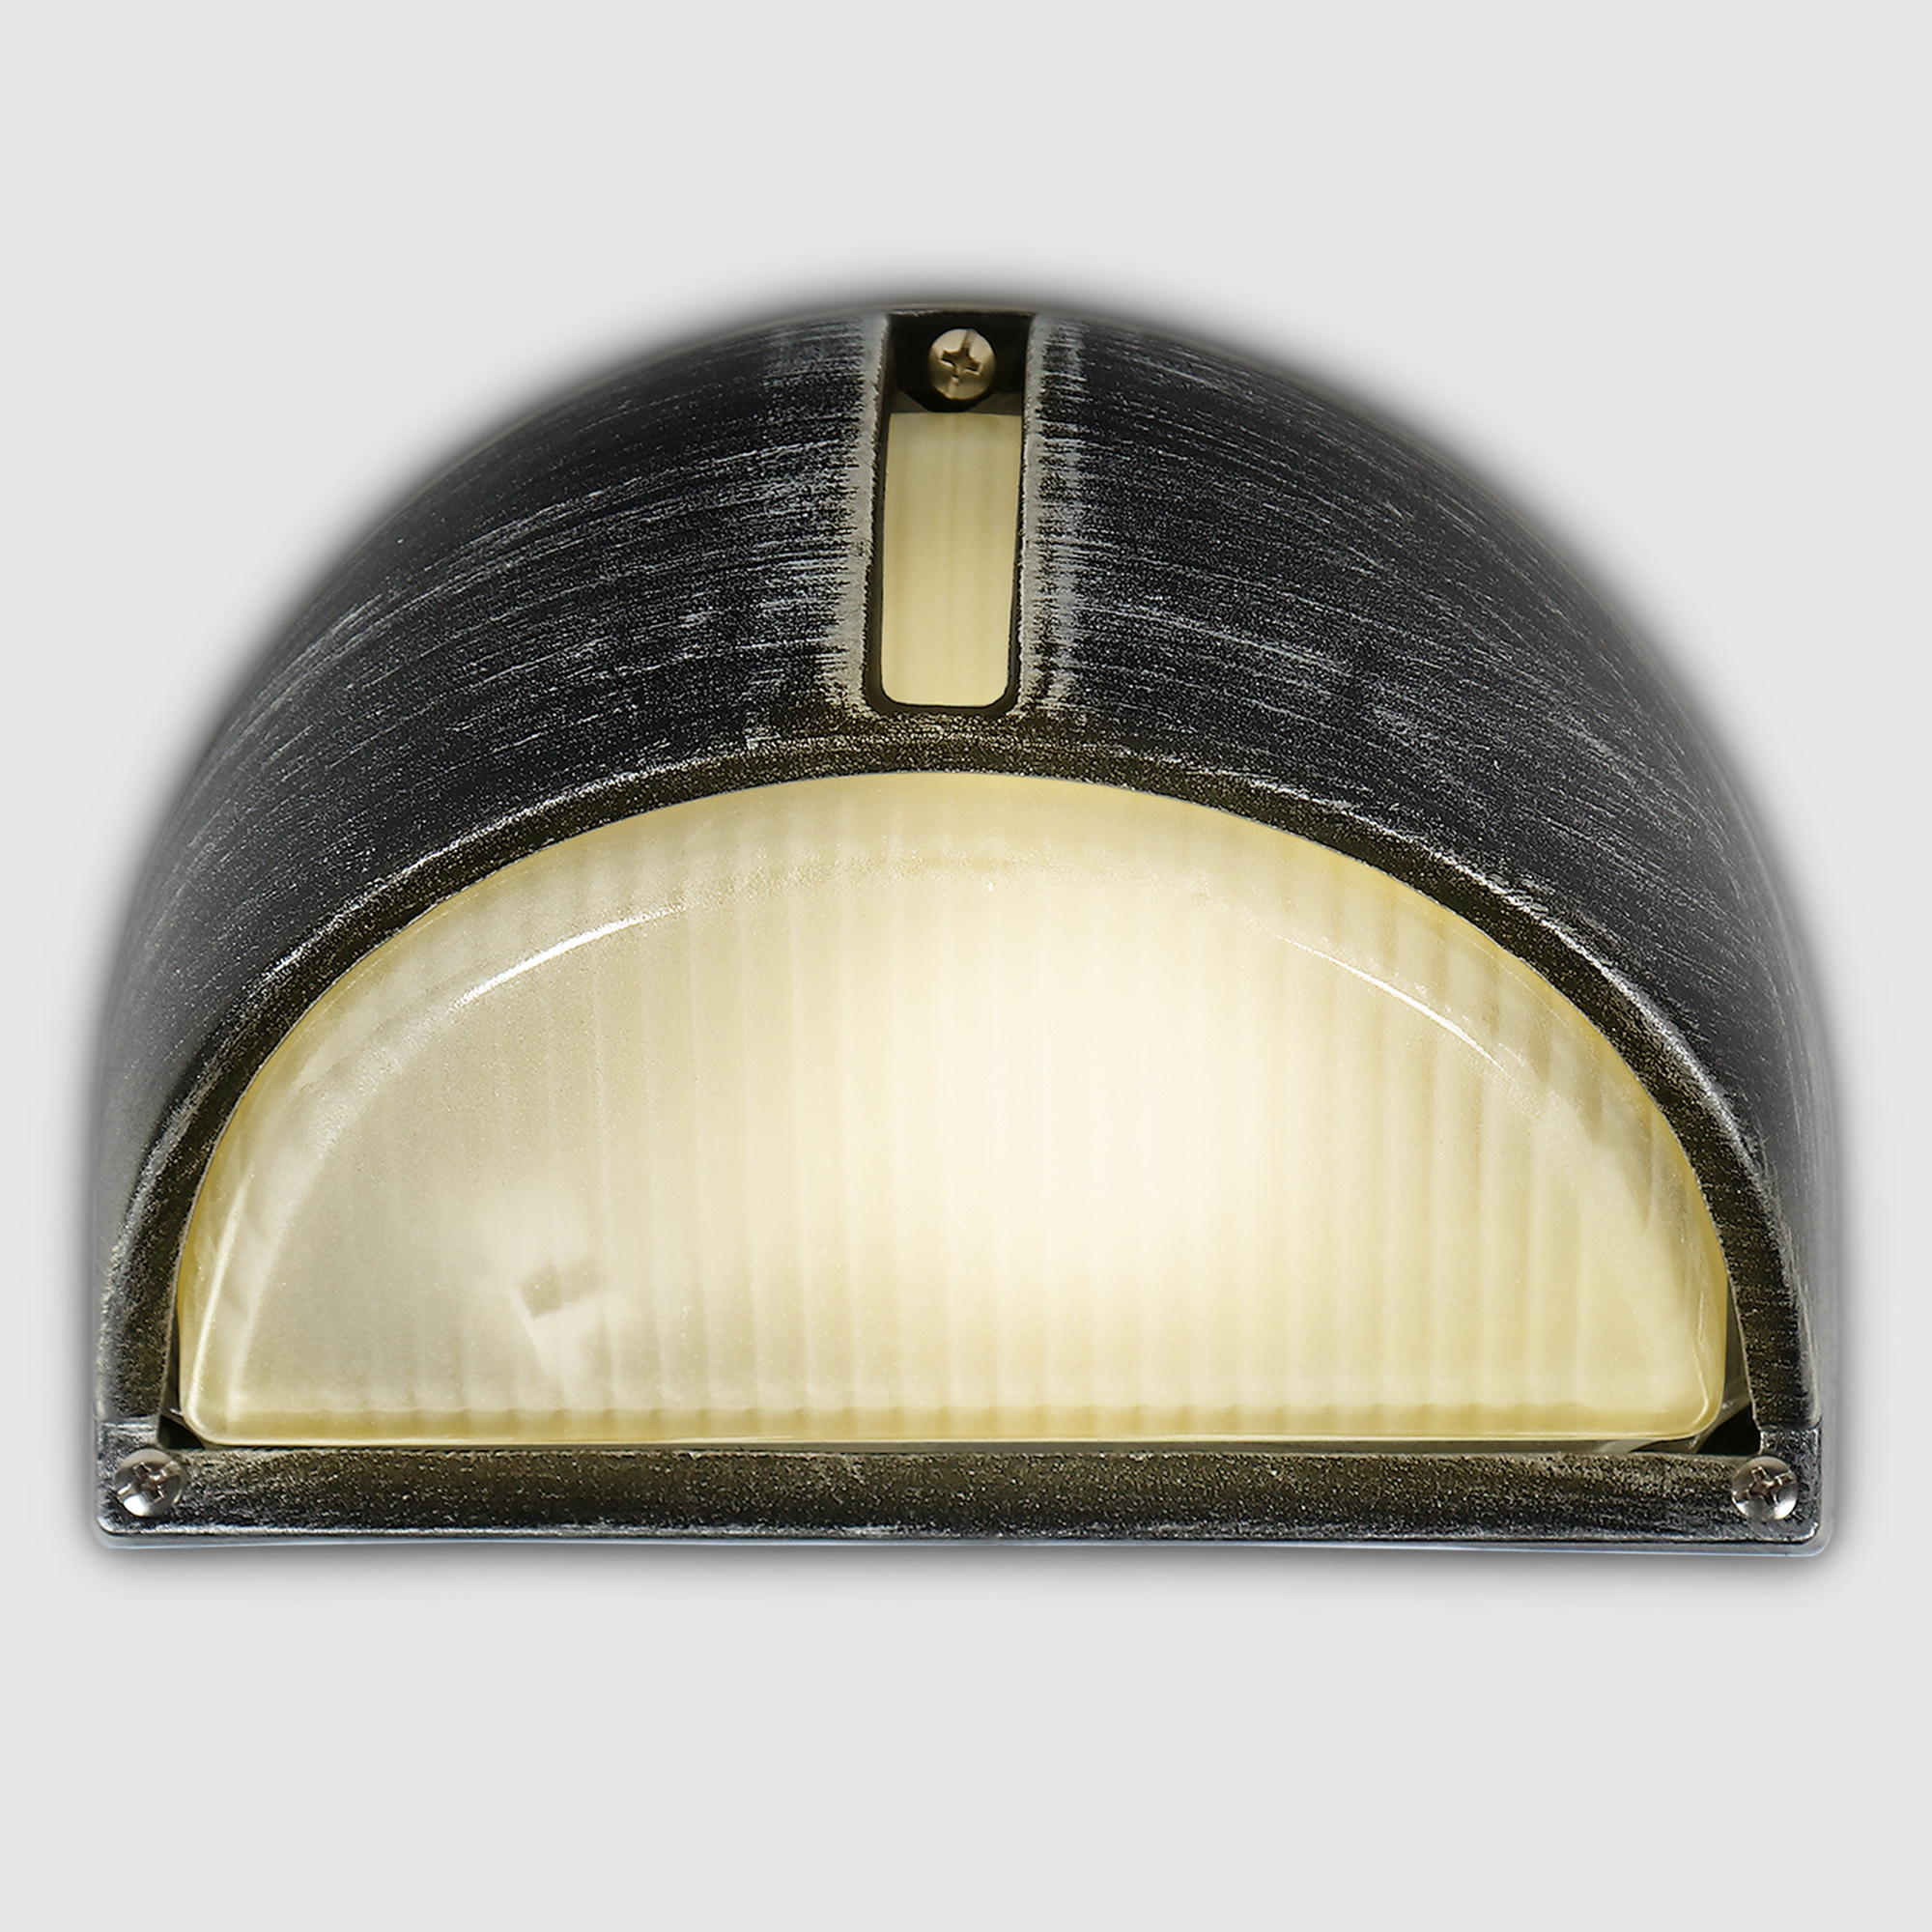 Светильник садовый Amber Lamp 6801LB настенный IP44 E27 100Вт, черное серебро - фото 2